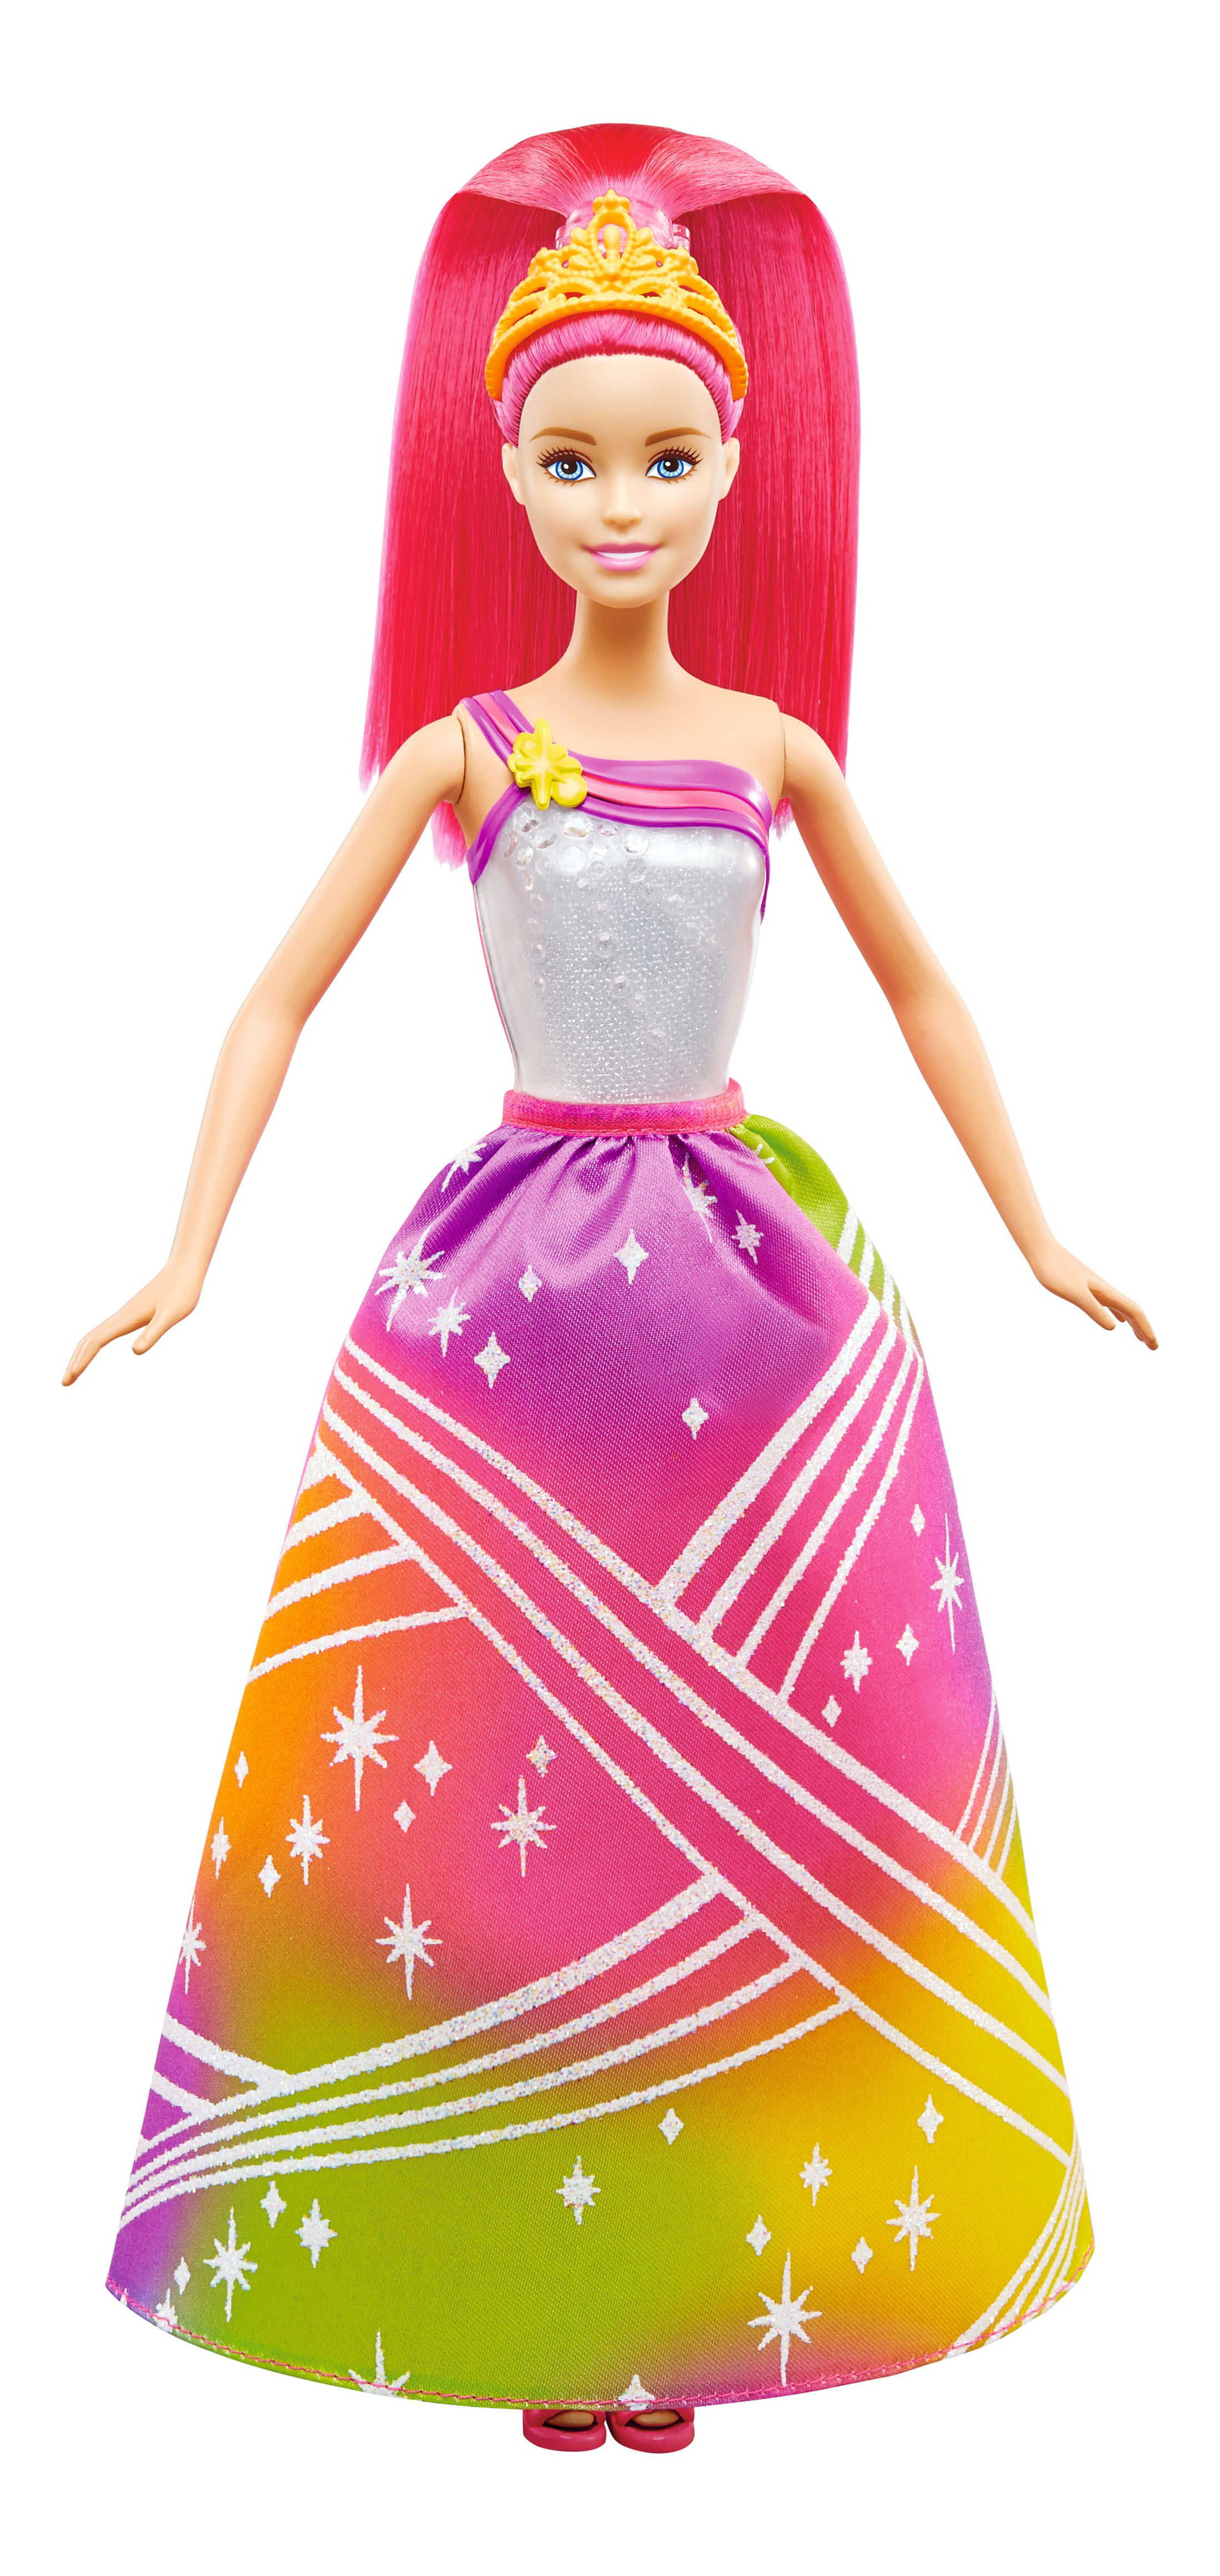 Кукла Barbie Радужная принцесса с волшебными волосами кукла barbie принцесса брюнетка в ярком платье gjk15